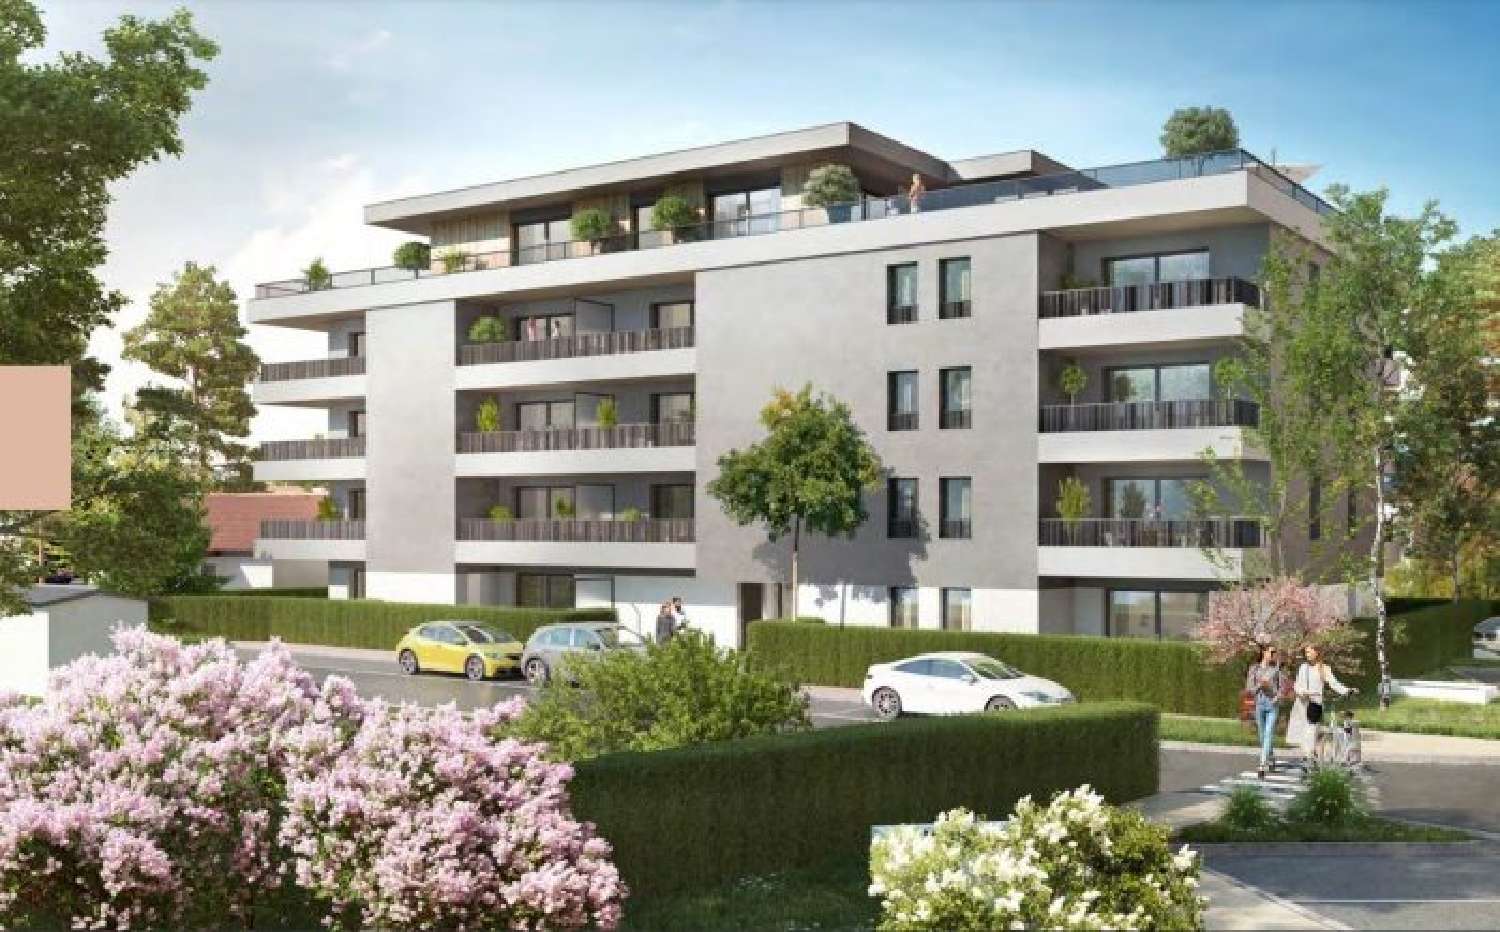  à vendre appartement Neydens Haute-Savoie 3